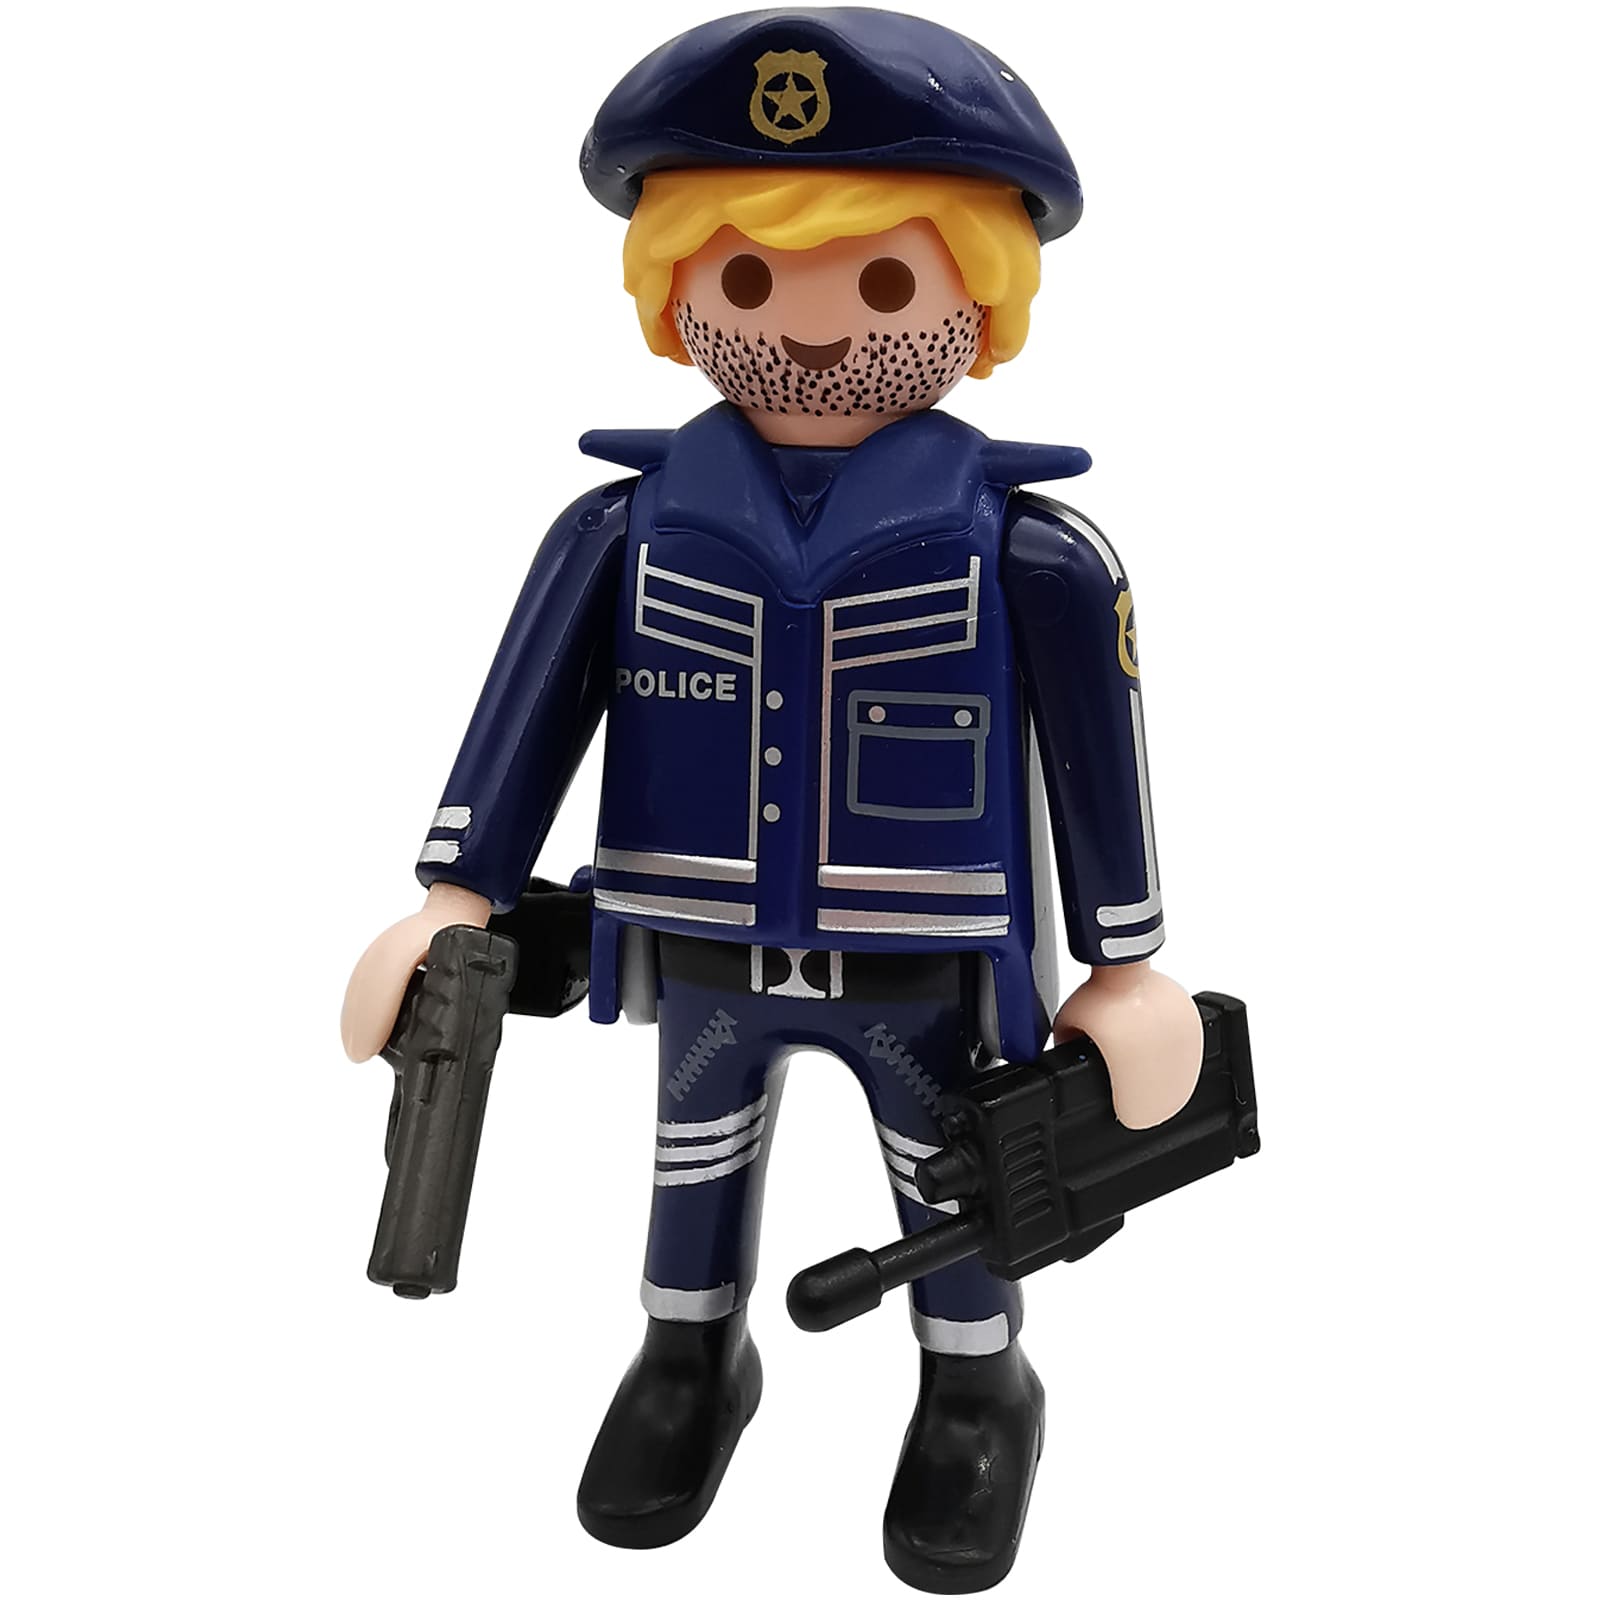 Playmobil Polizei  Polizist  4693  SEK  Folienverpackung  Spezialeinheit 